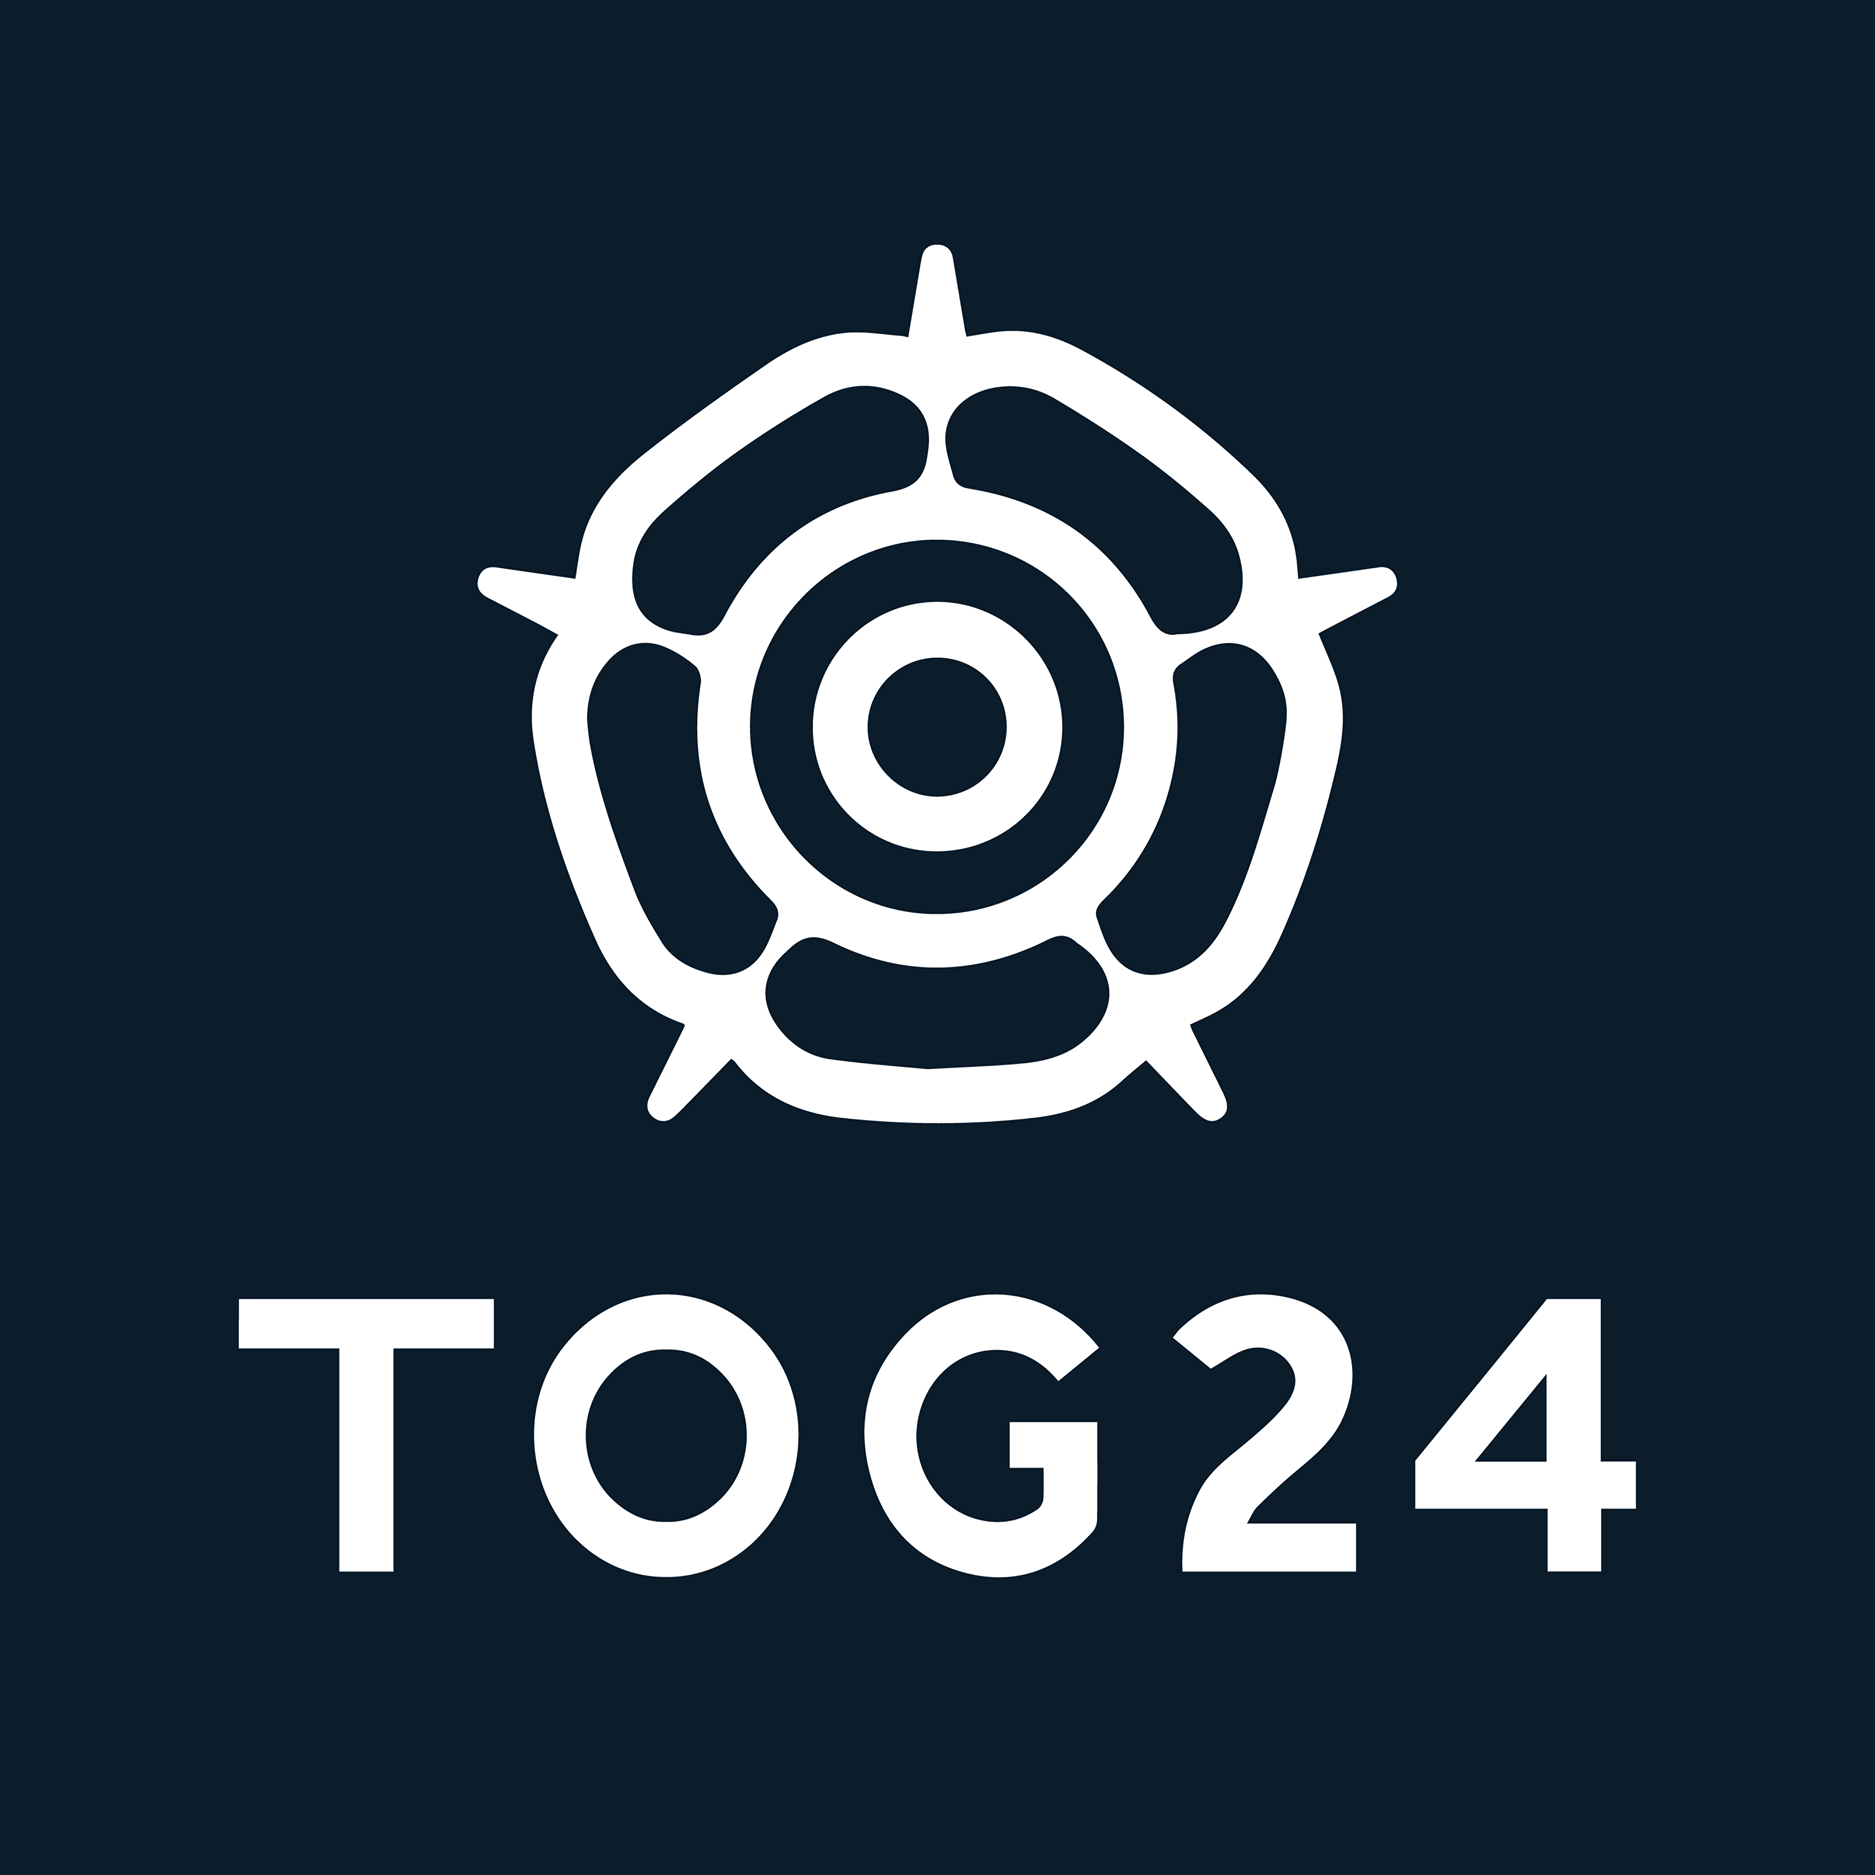 tog24 logo.png